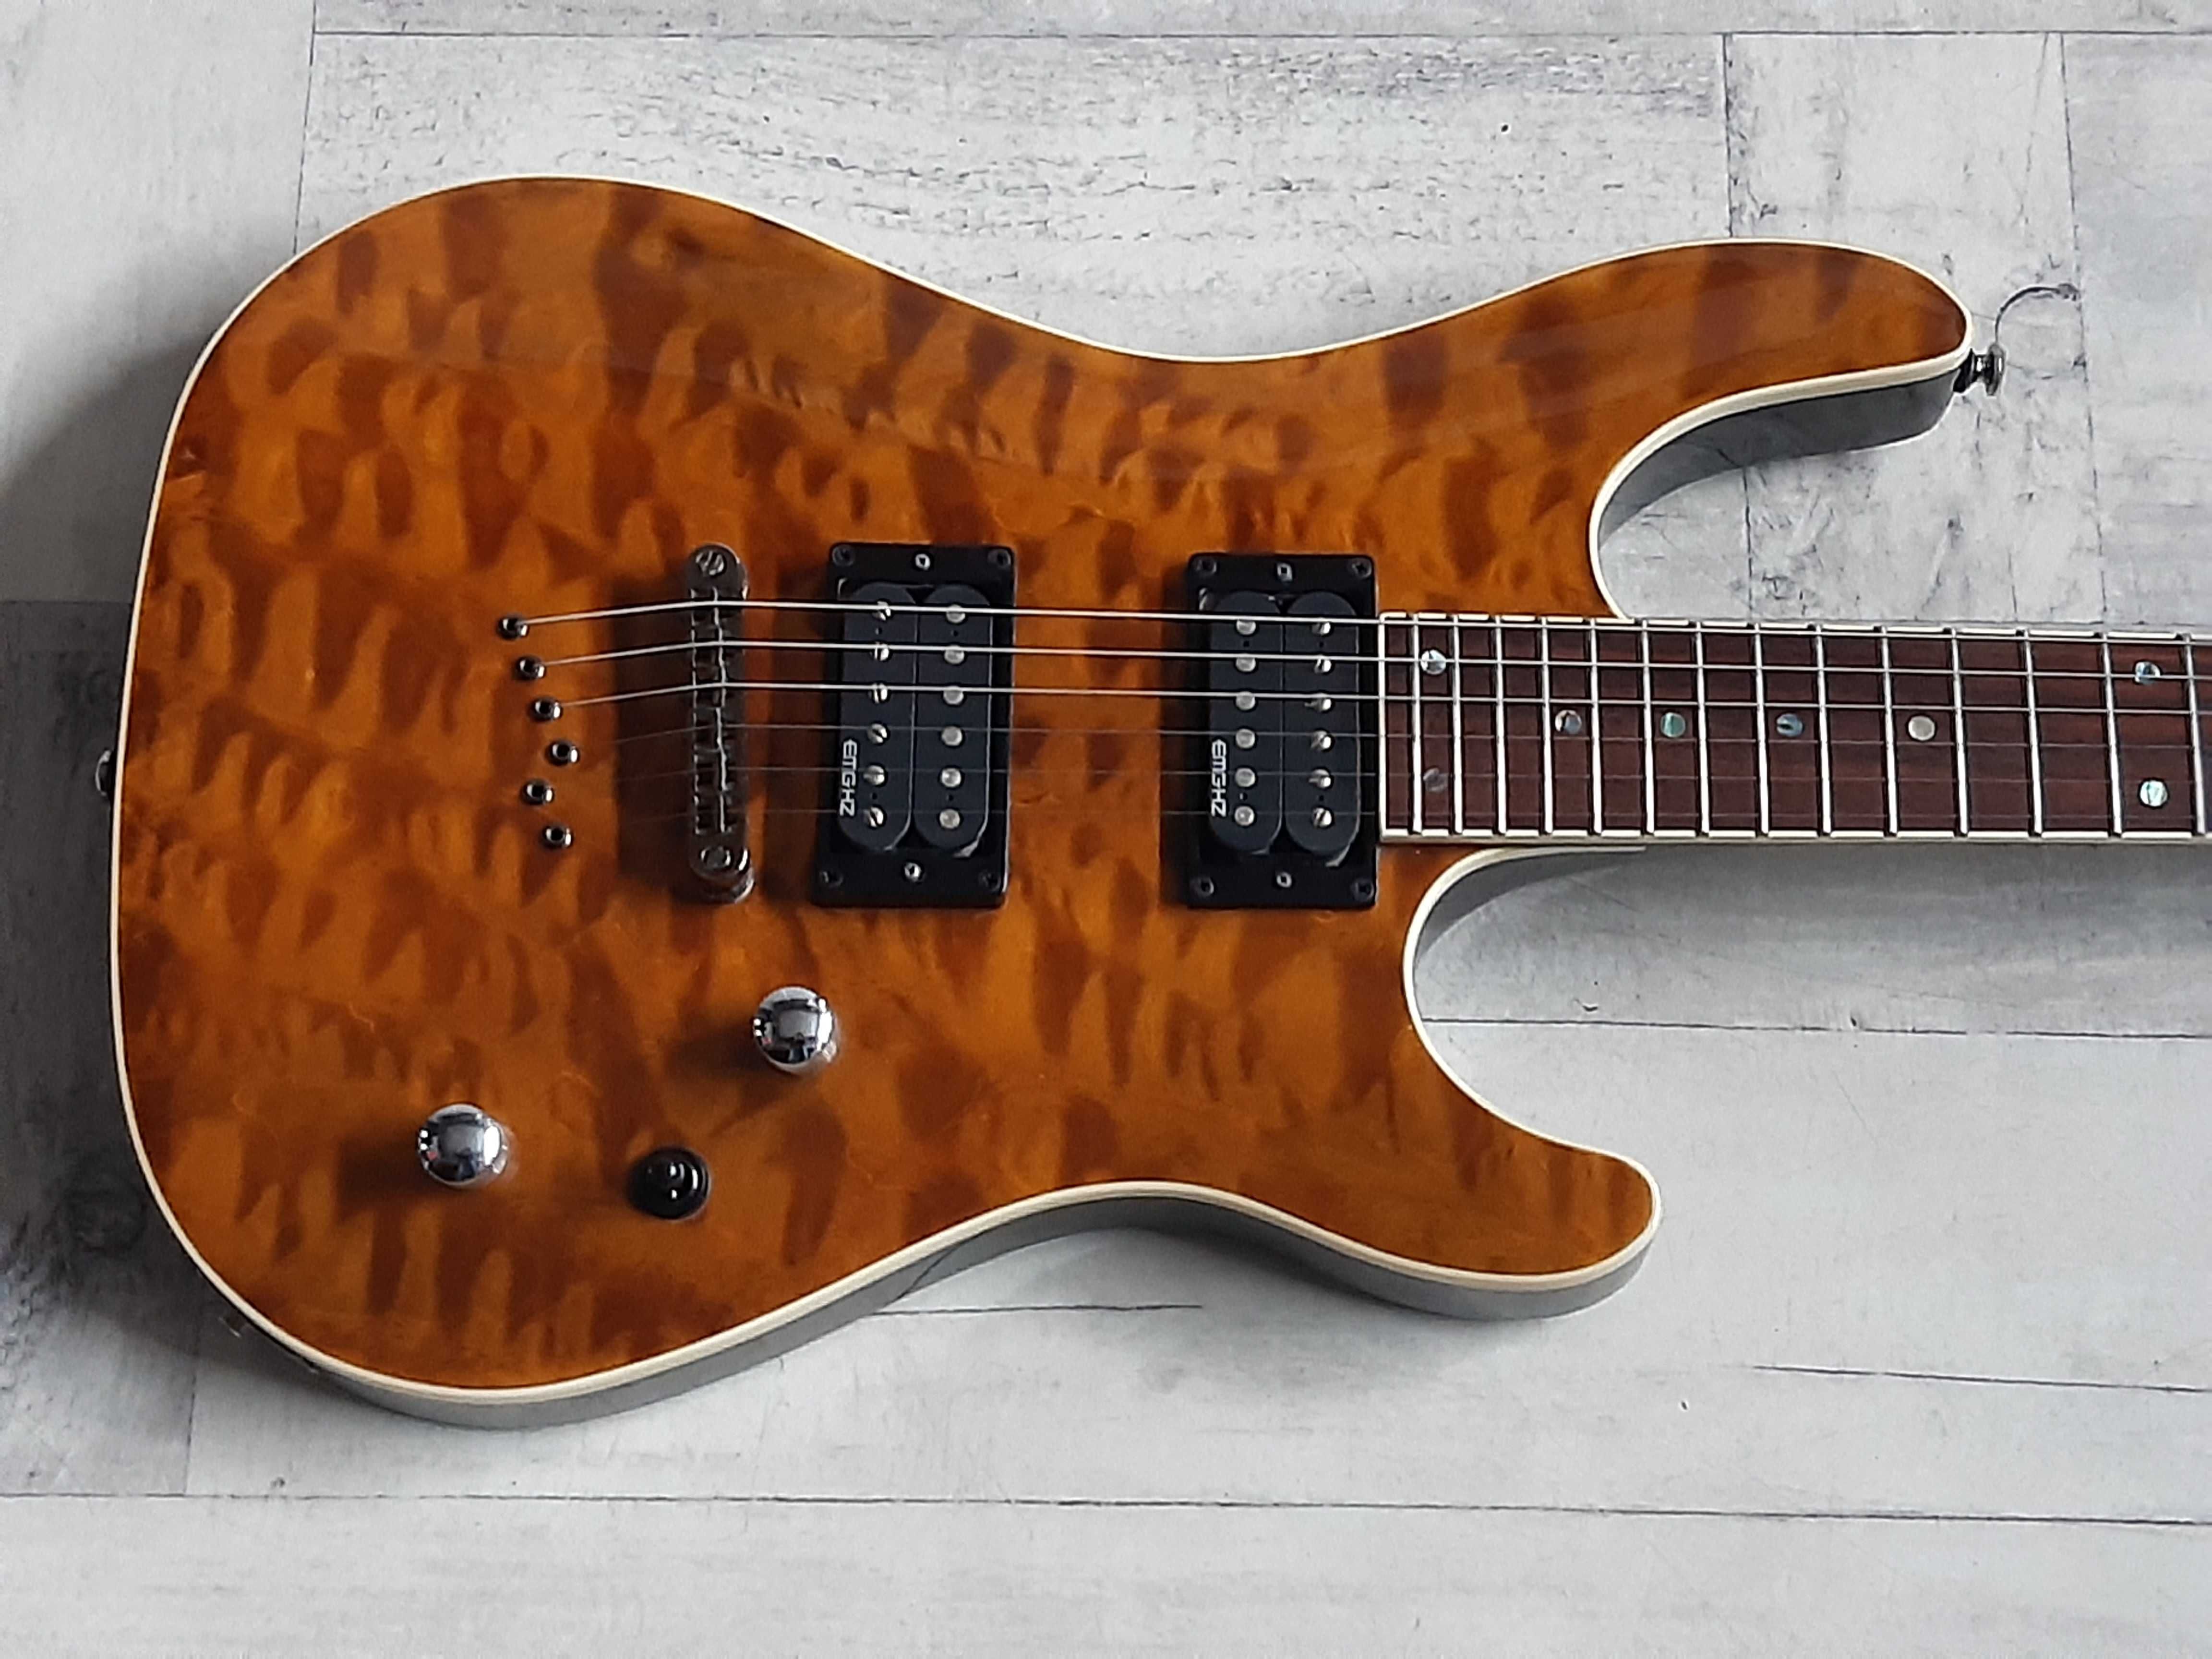 Piękna Gitara Cort -EMG- transparent amber- wysyłka Gratis lub zamiana